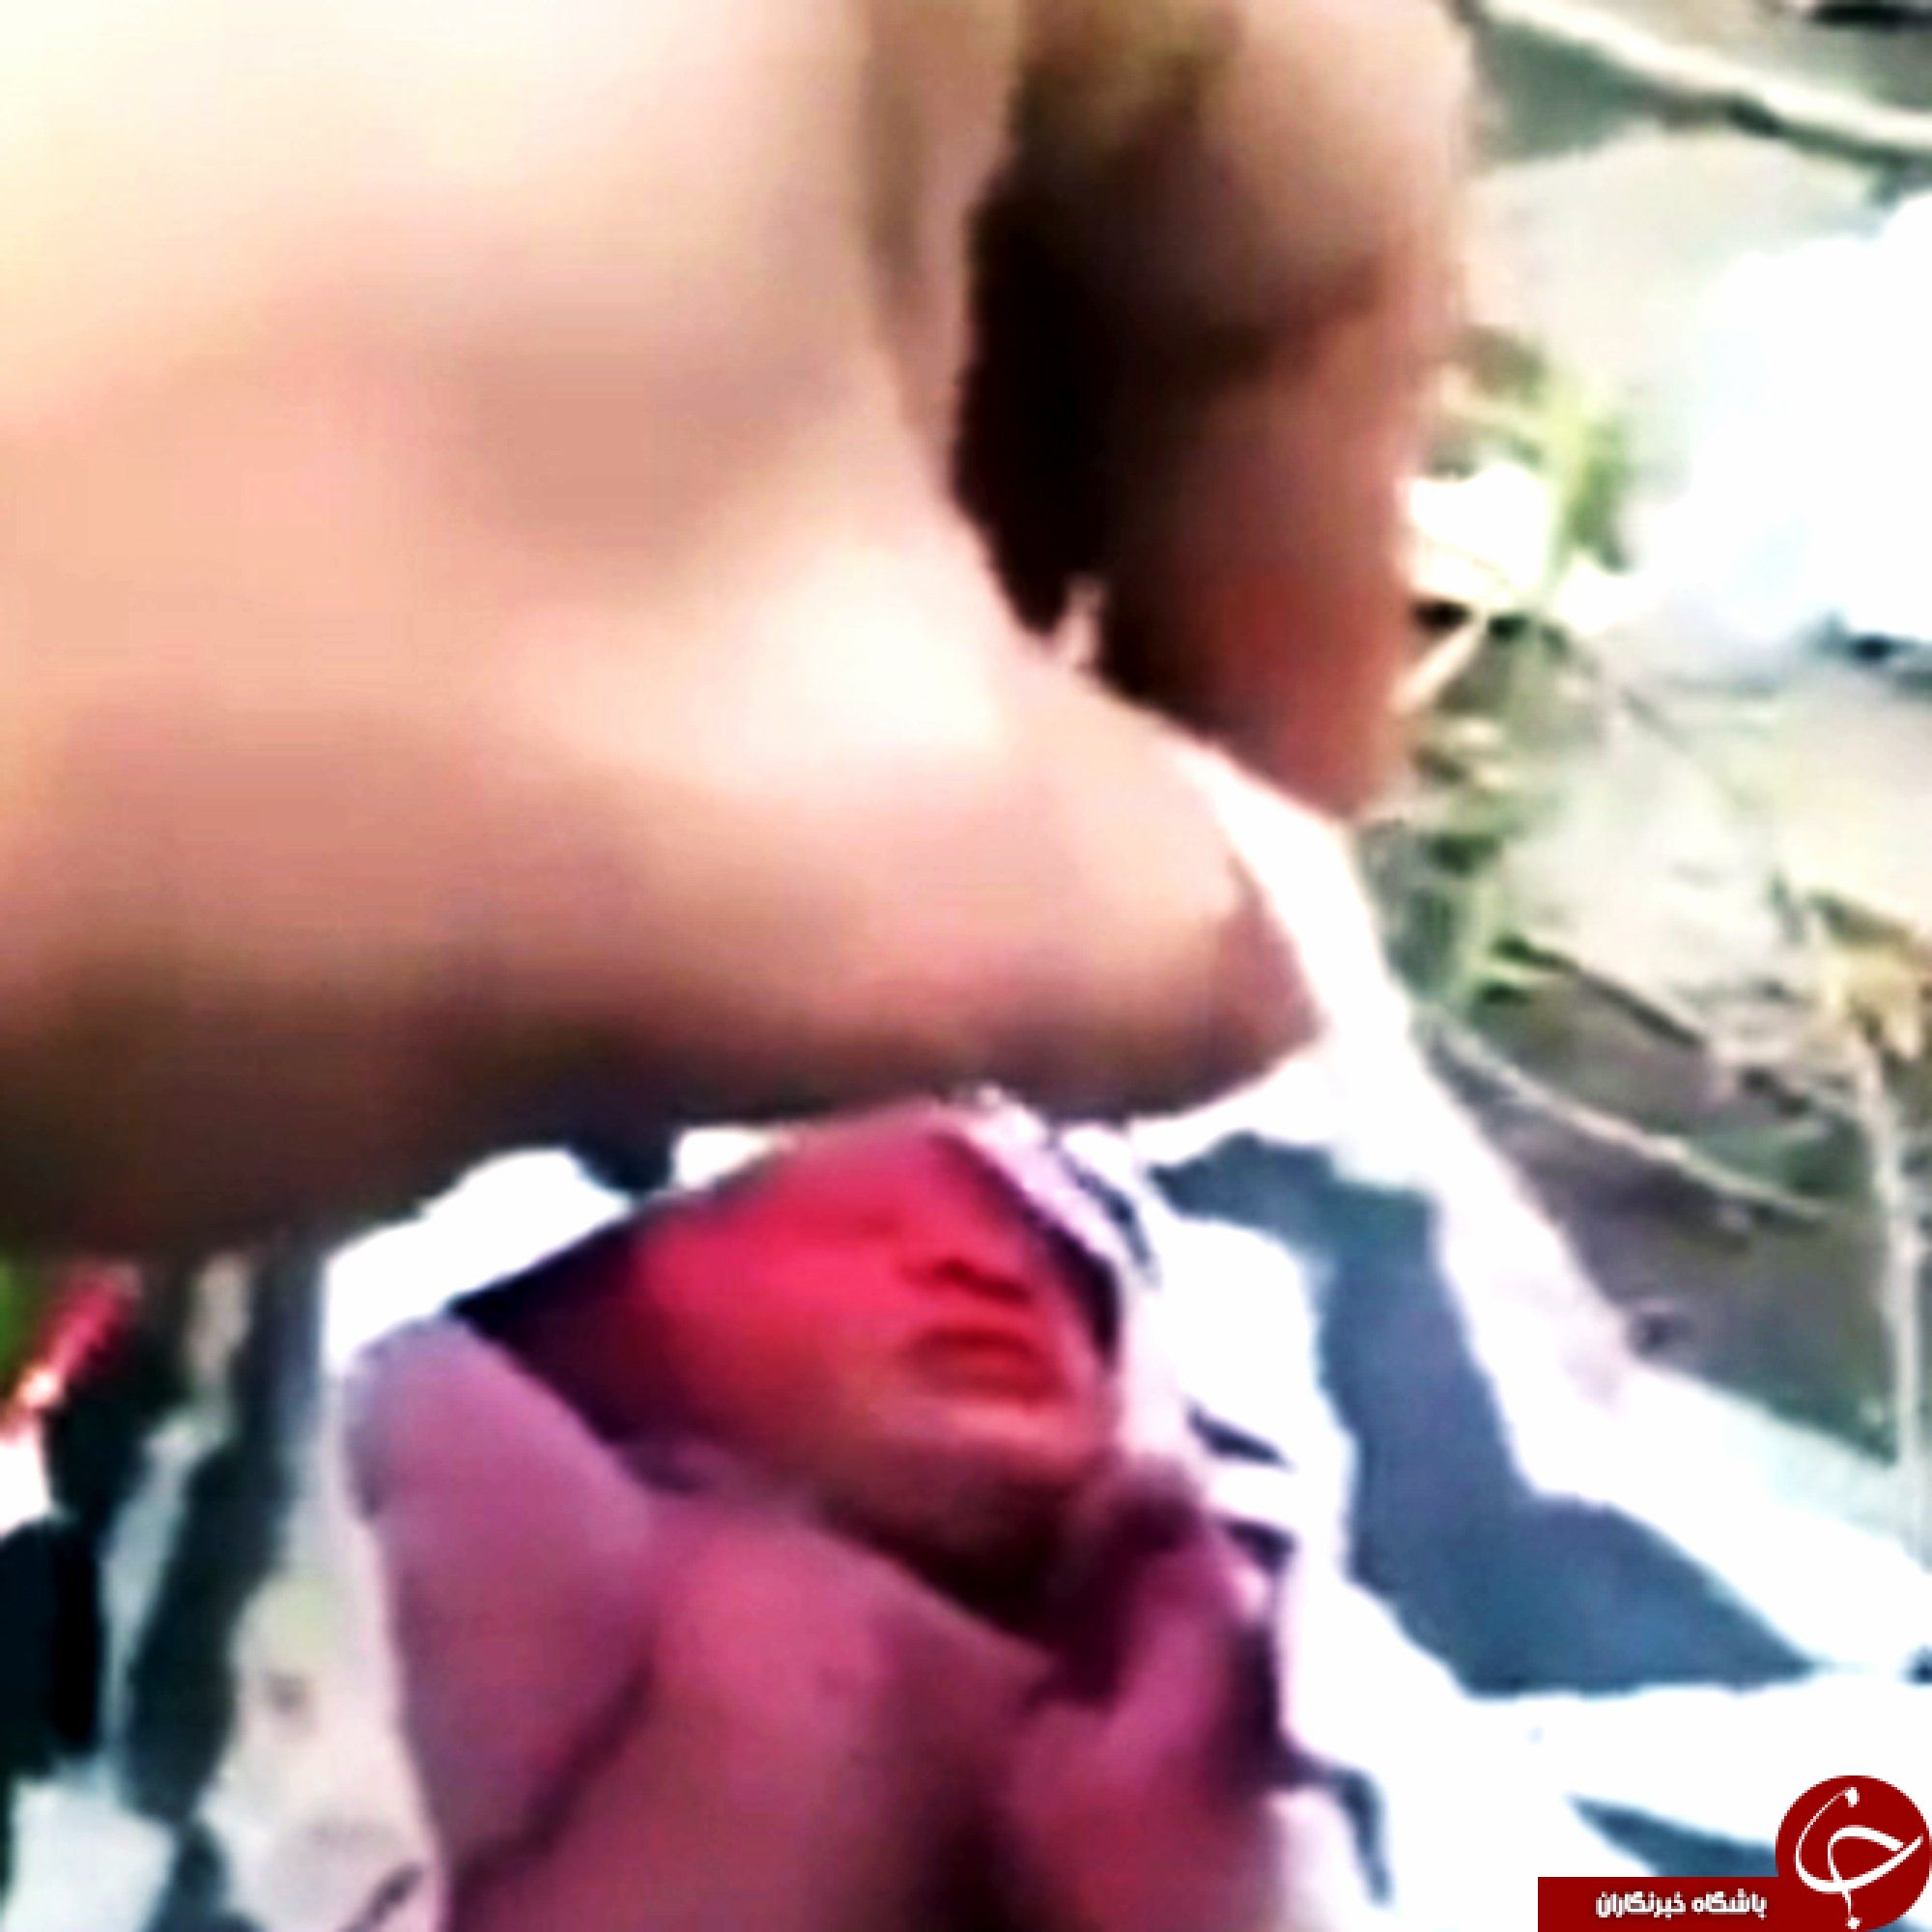 نوزاد رها شده در خیابان عابران را شوکه کرد + تصاویر